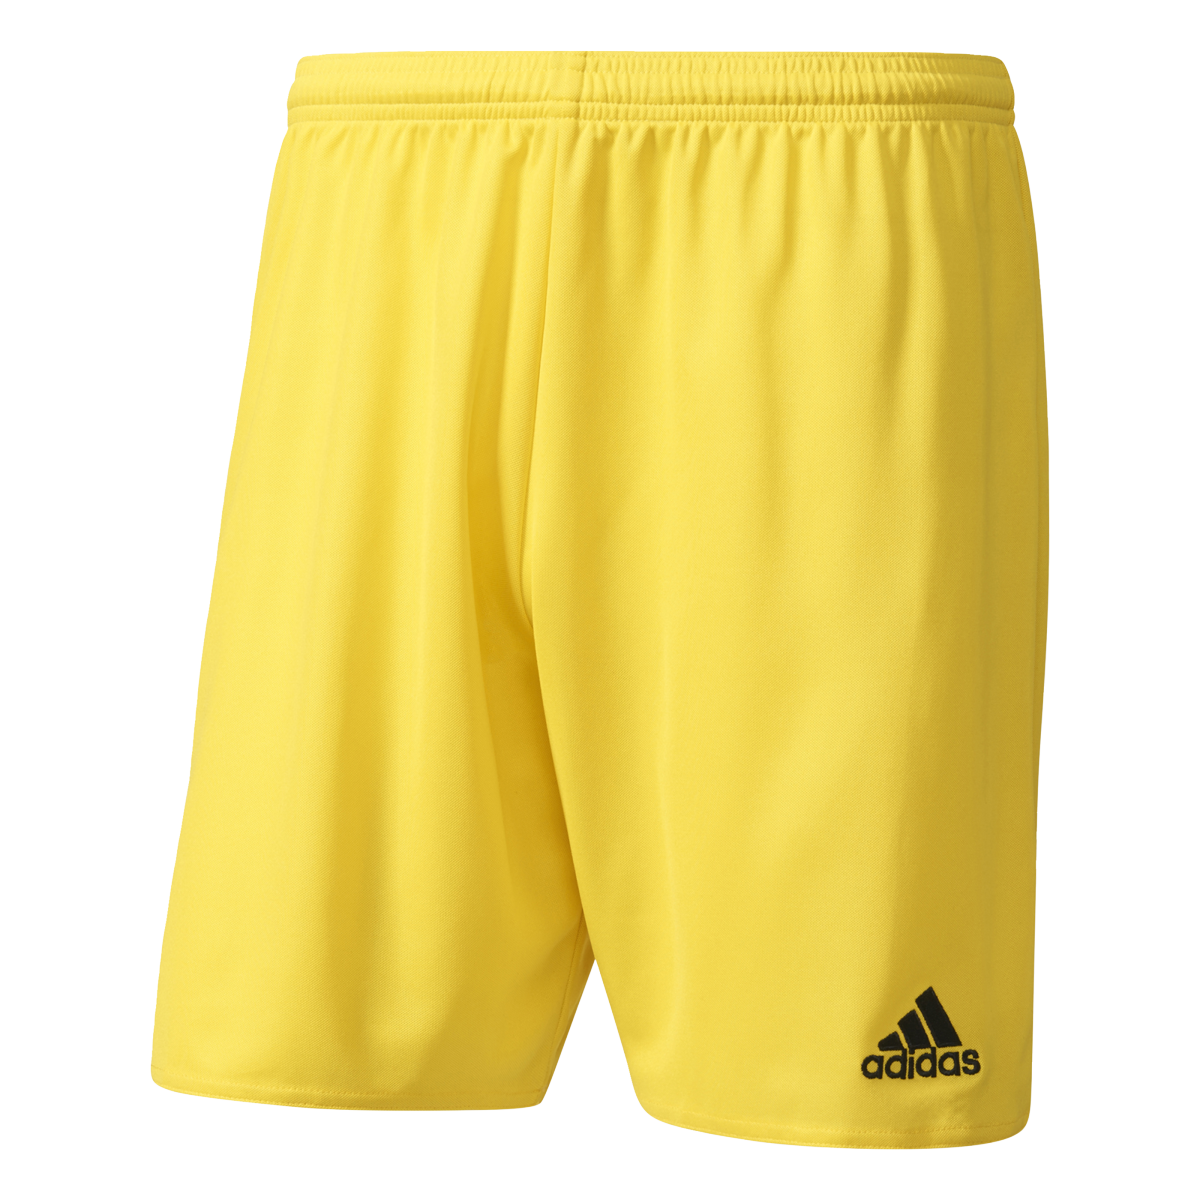 Adidas Parma 16 žlutá/černá UK S Pánské